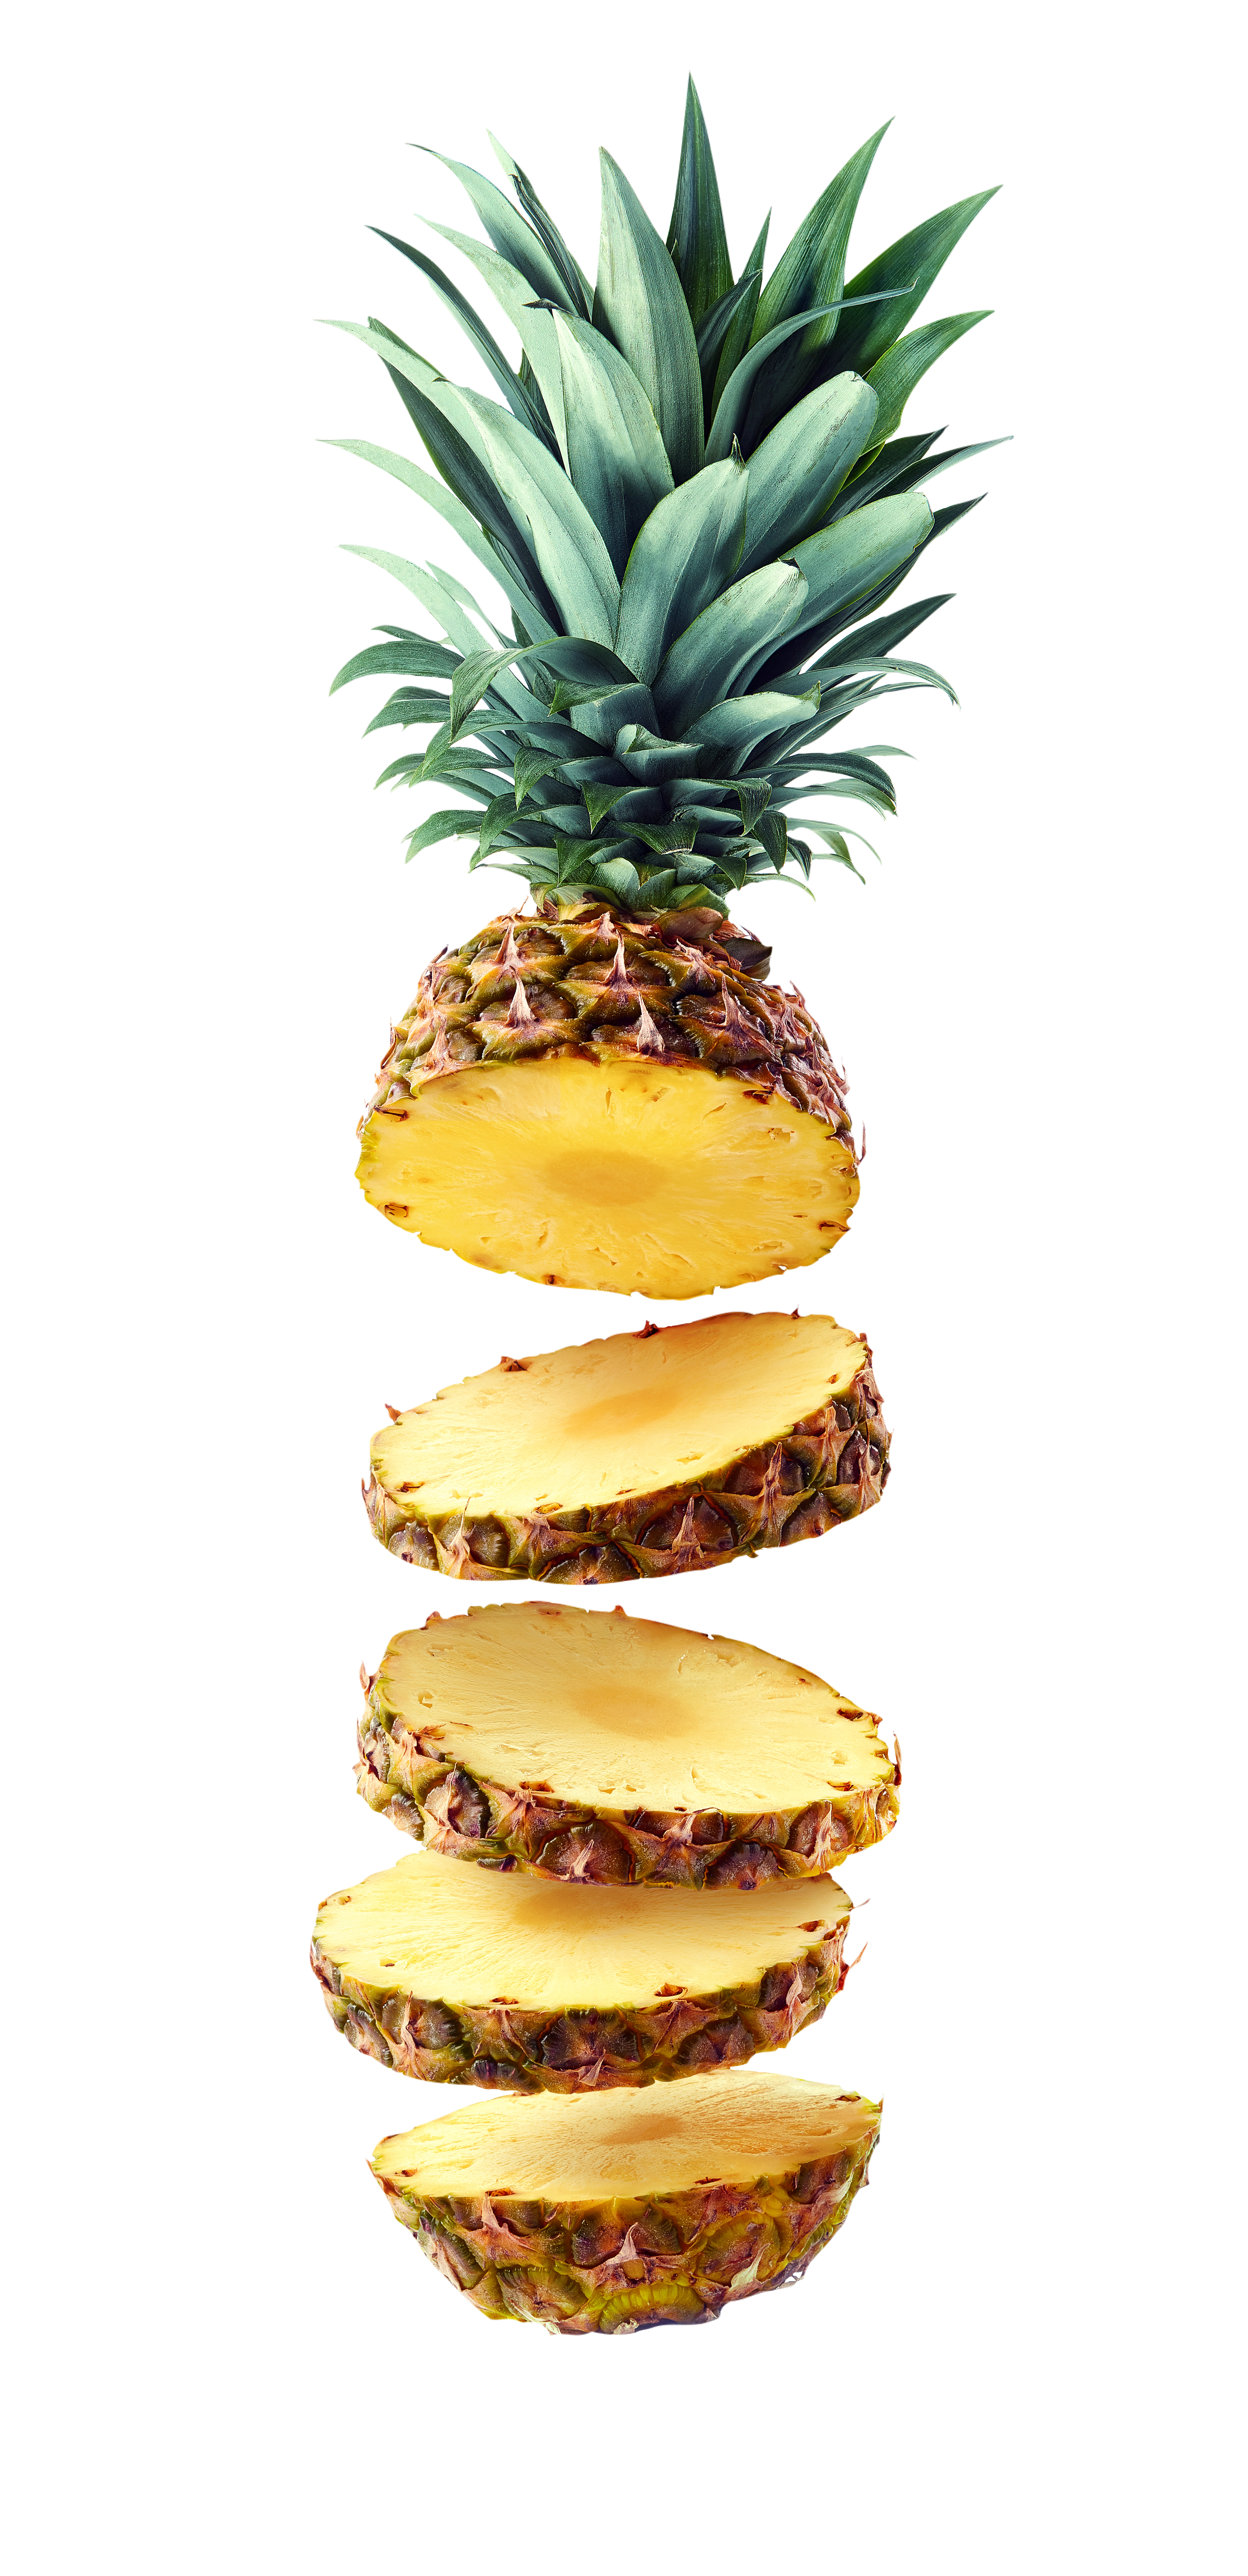 Zummo представляет Isla: новый продукт, который произведет революцию в потреблении натуральных ананасов